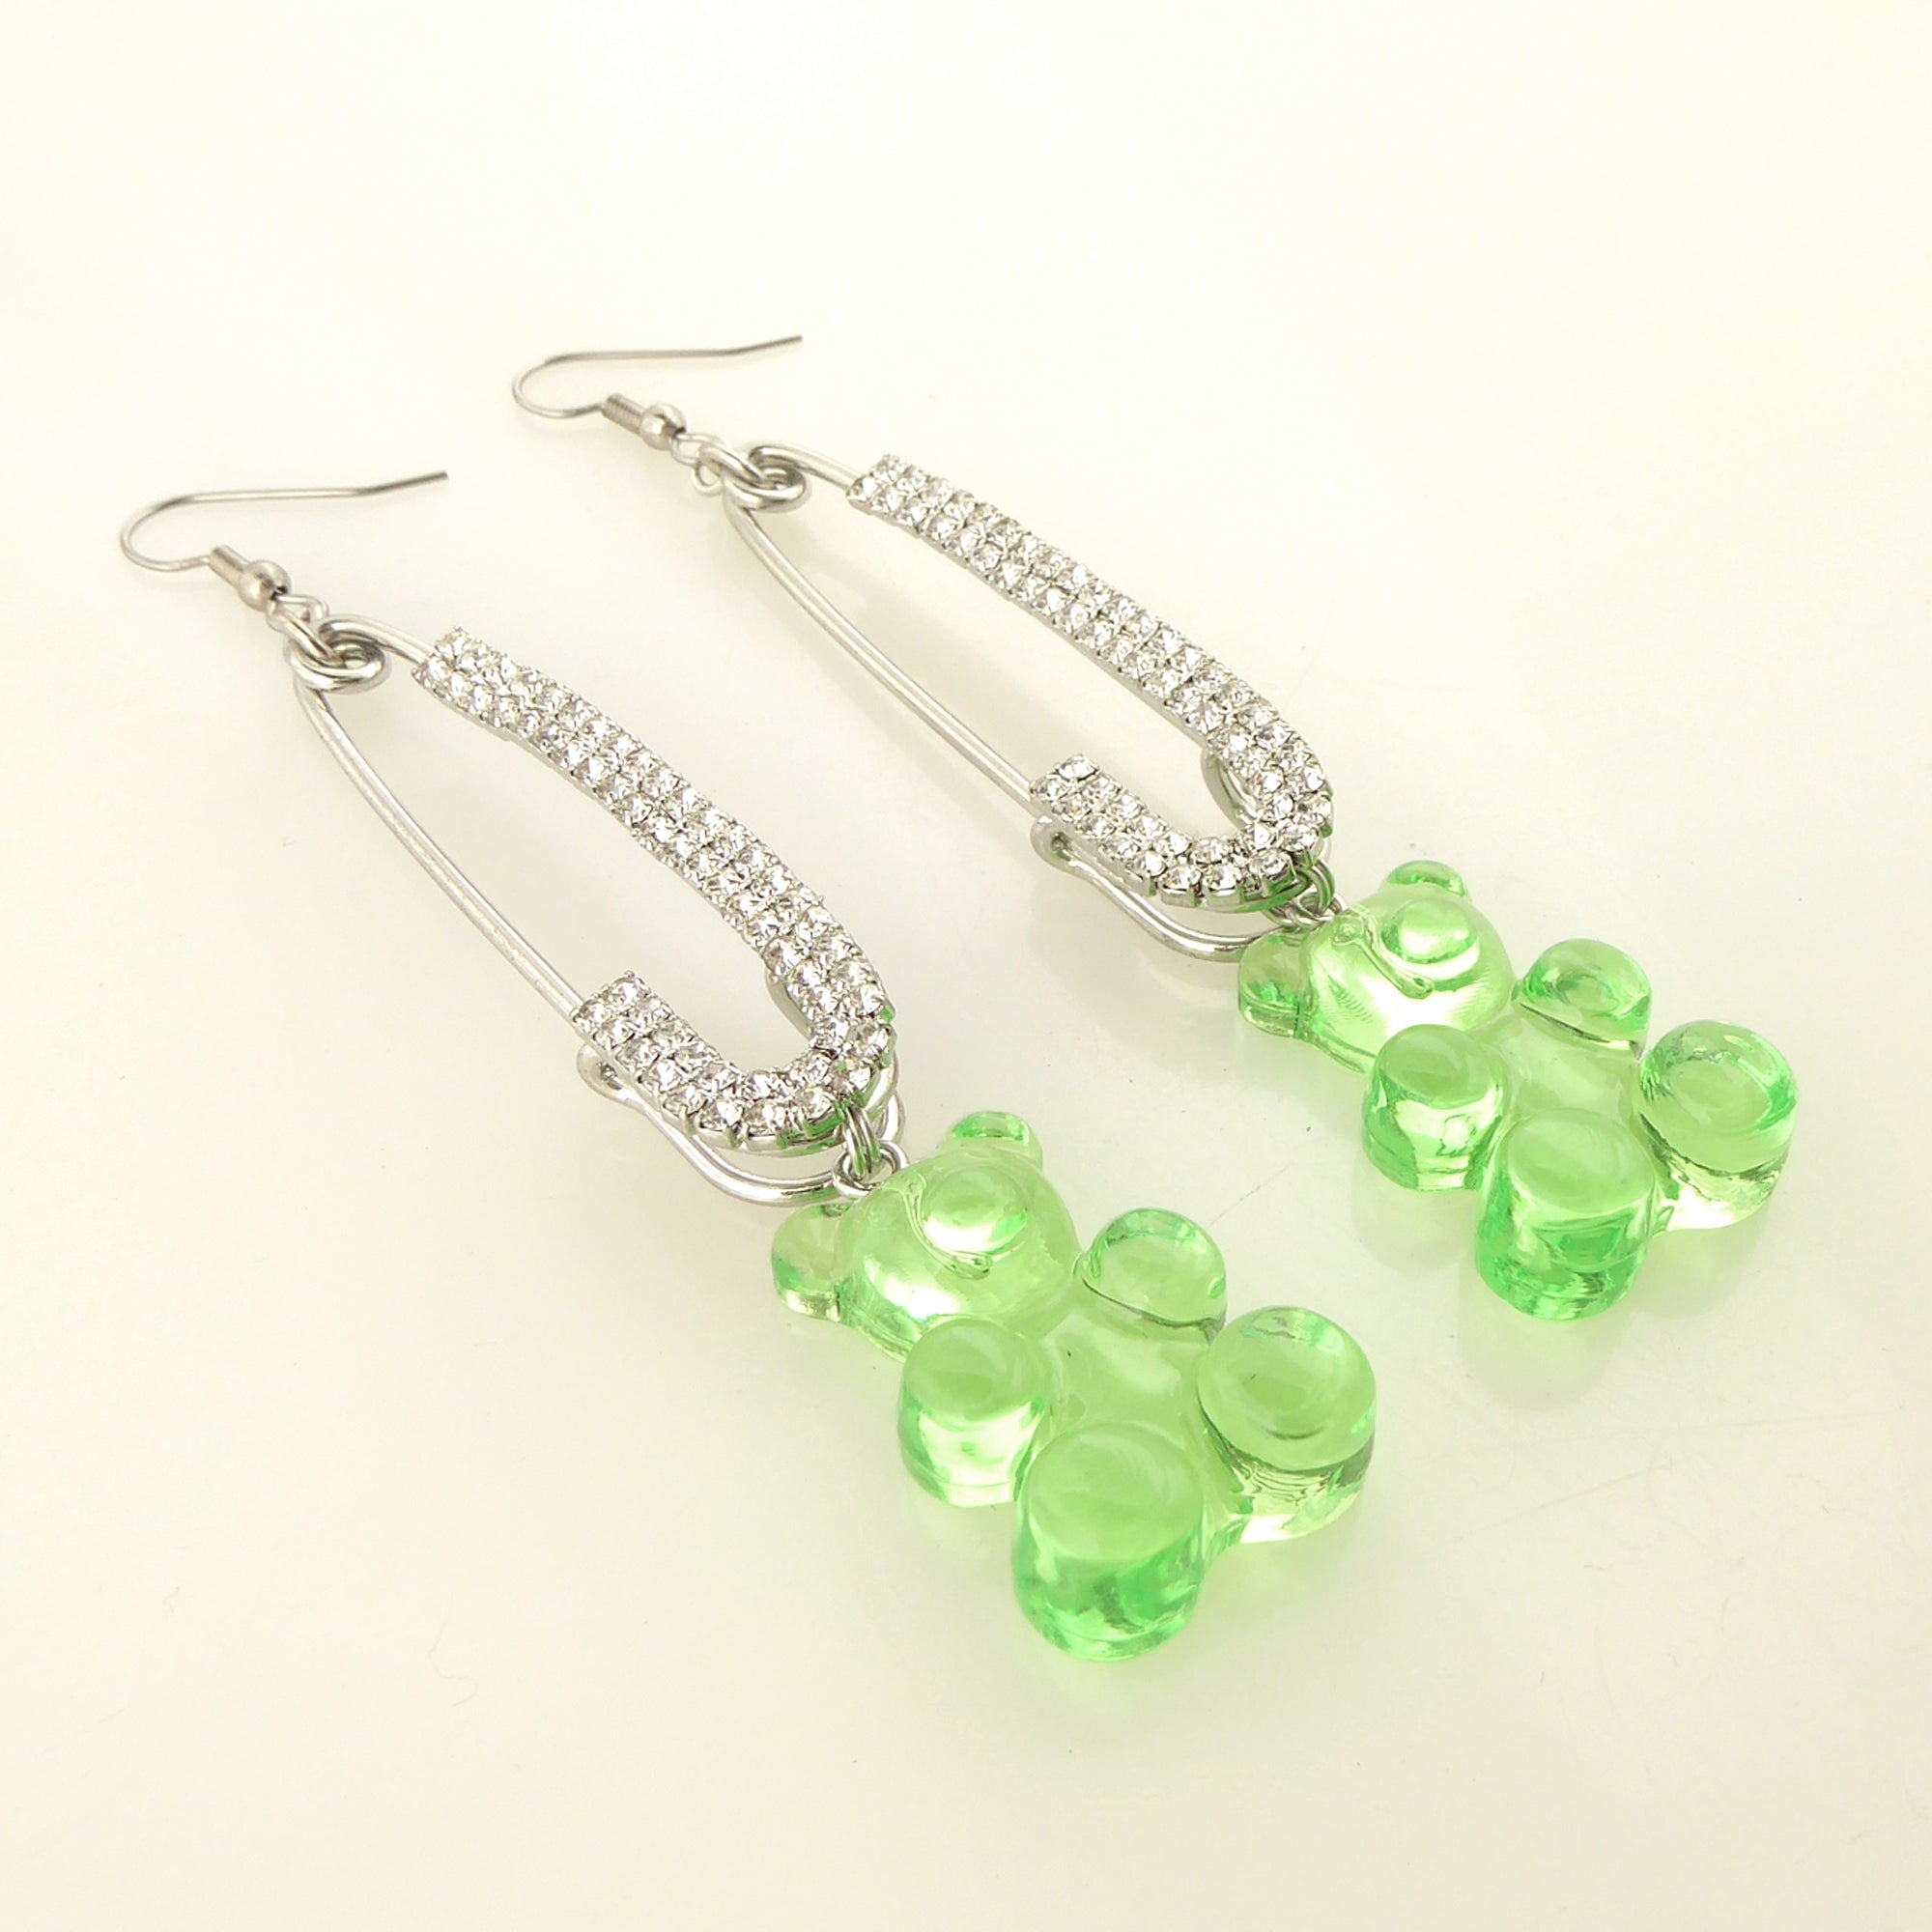 Green gummy bear earrings by Jenny Dayco 2